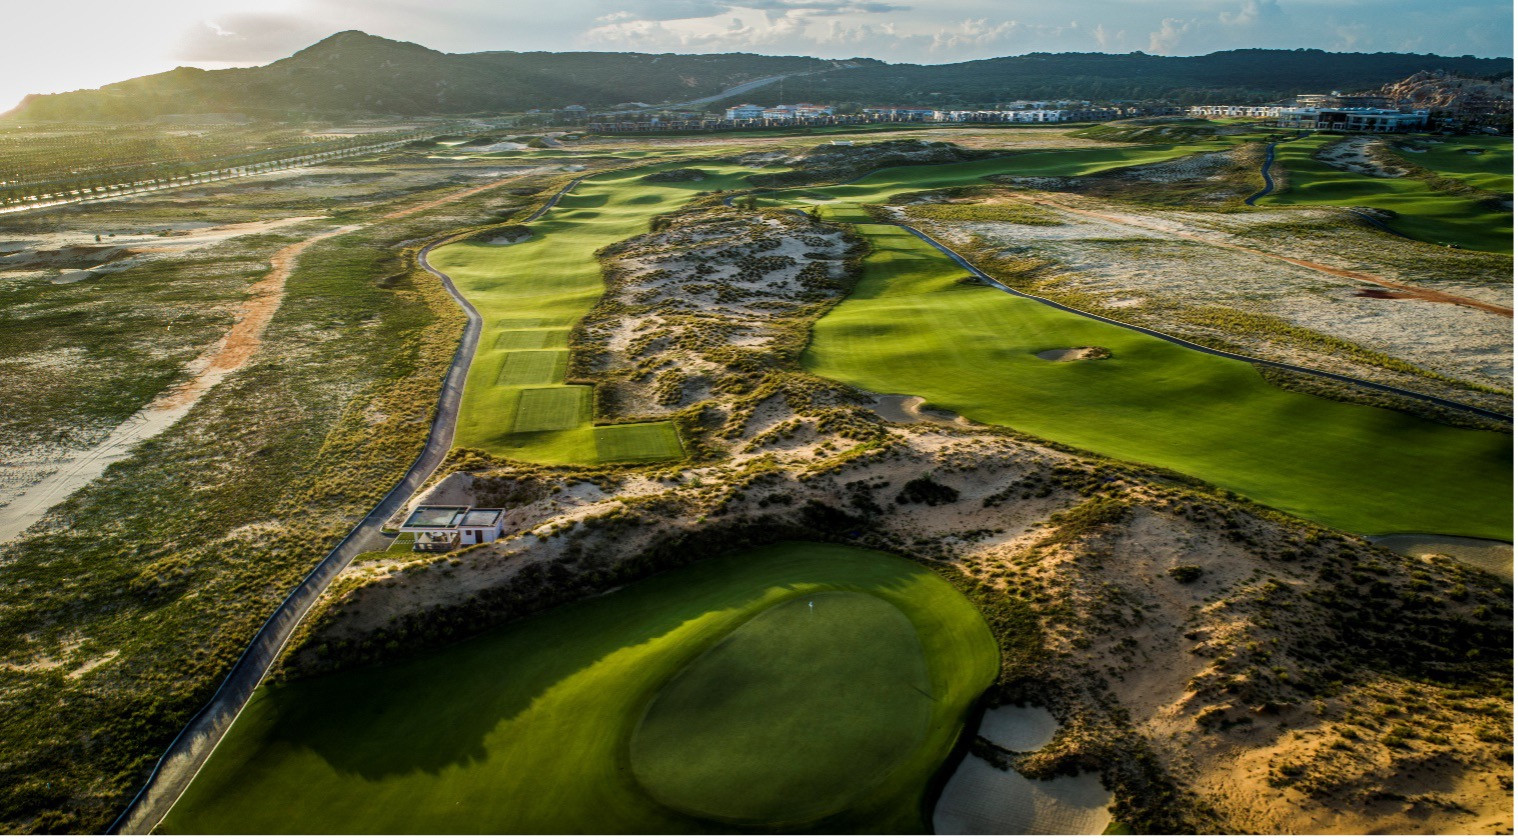 KN Golf Links được thiết kế 27 lỗ, với 18 lỗ theo phong cách sân links (liền kề bờ biển).